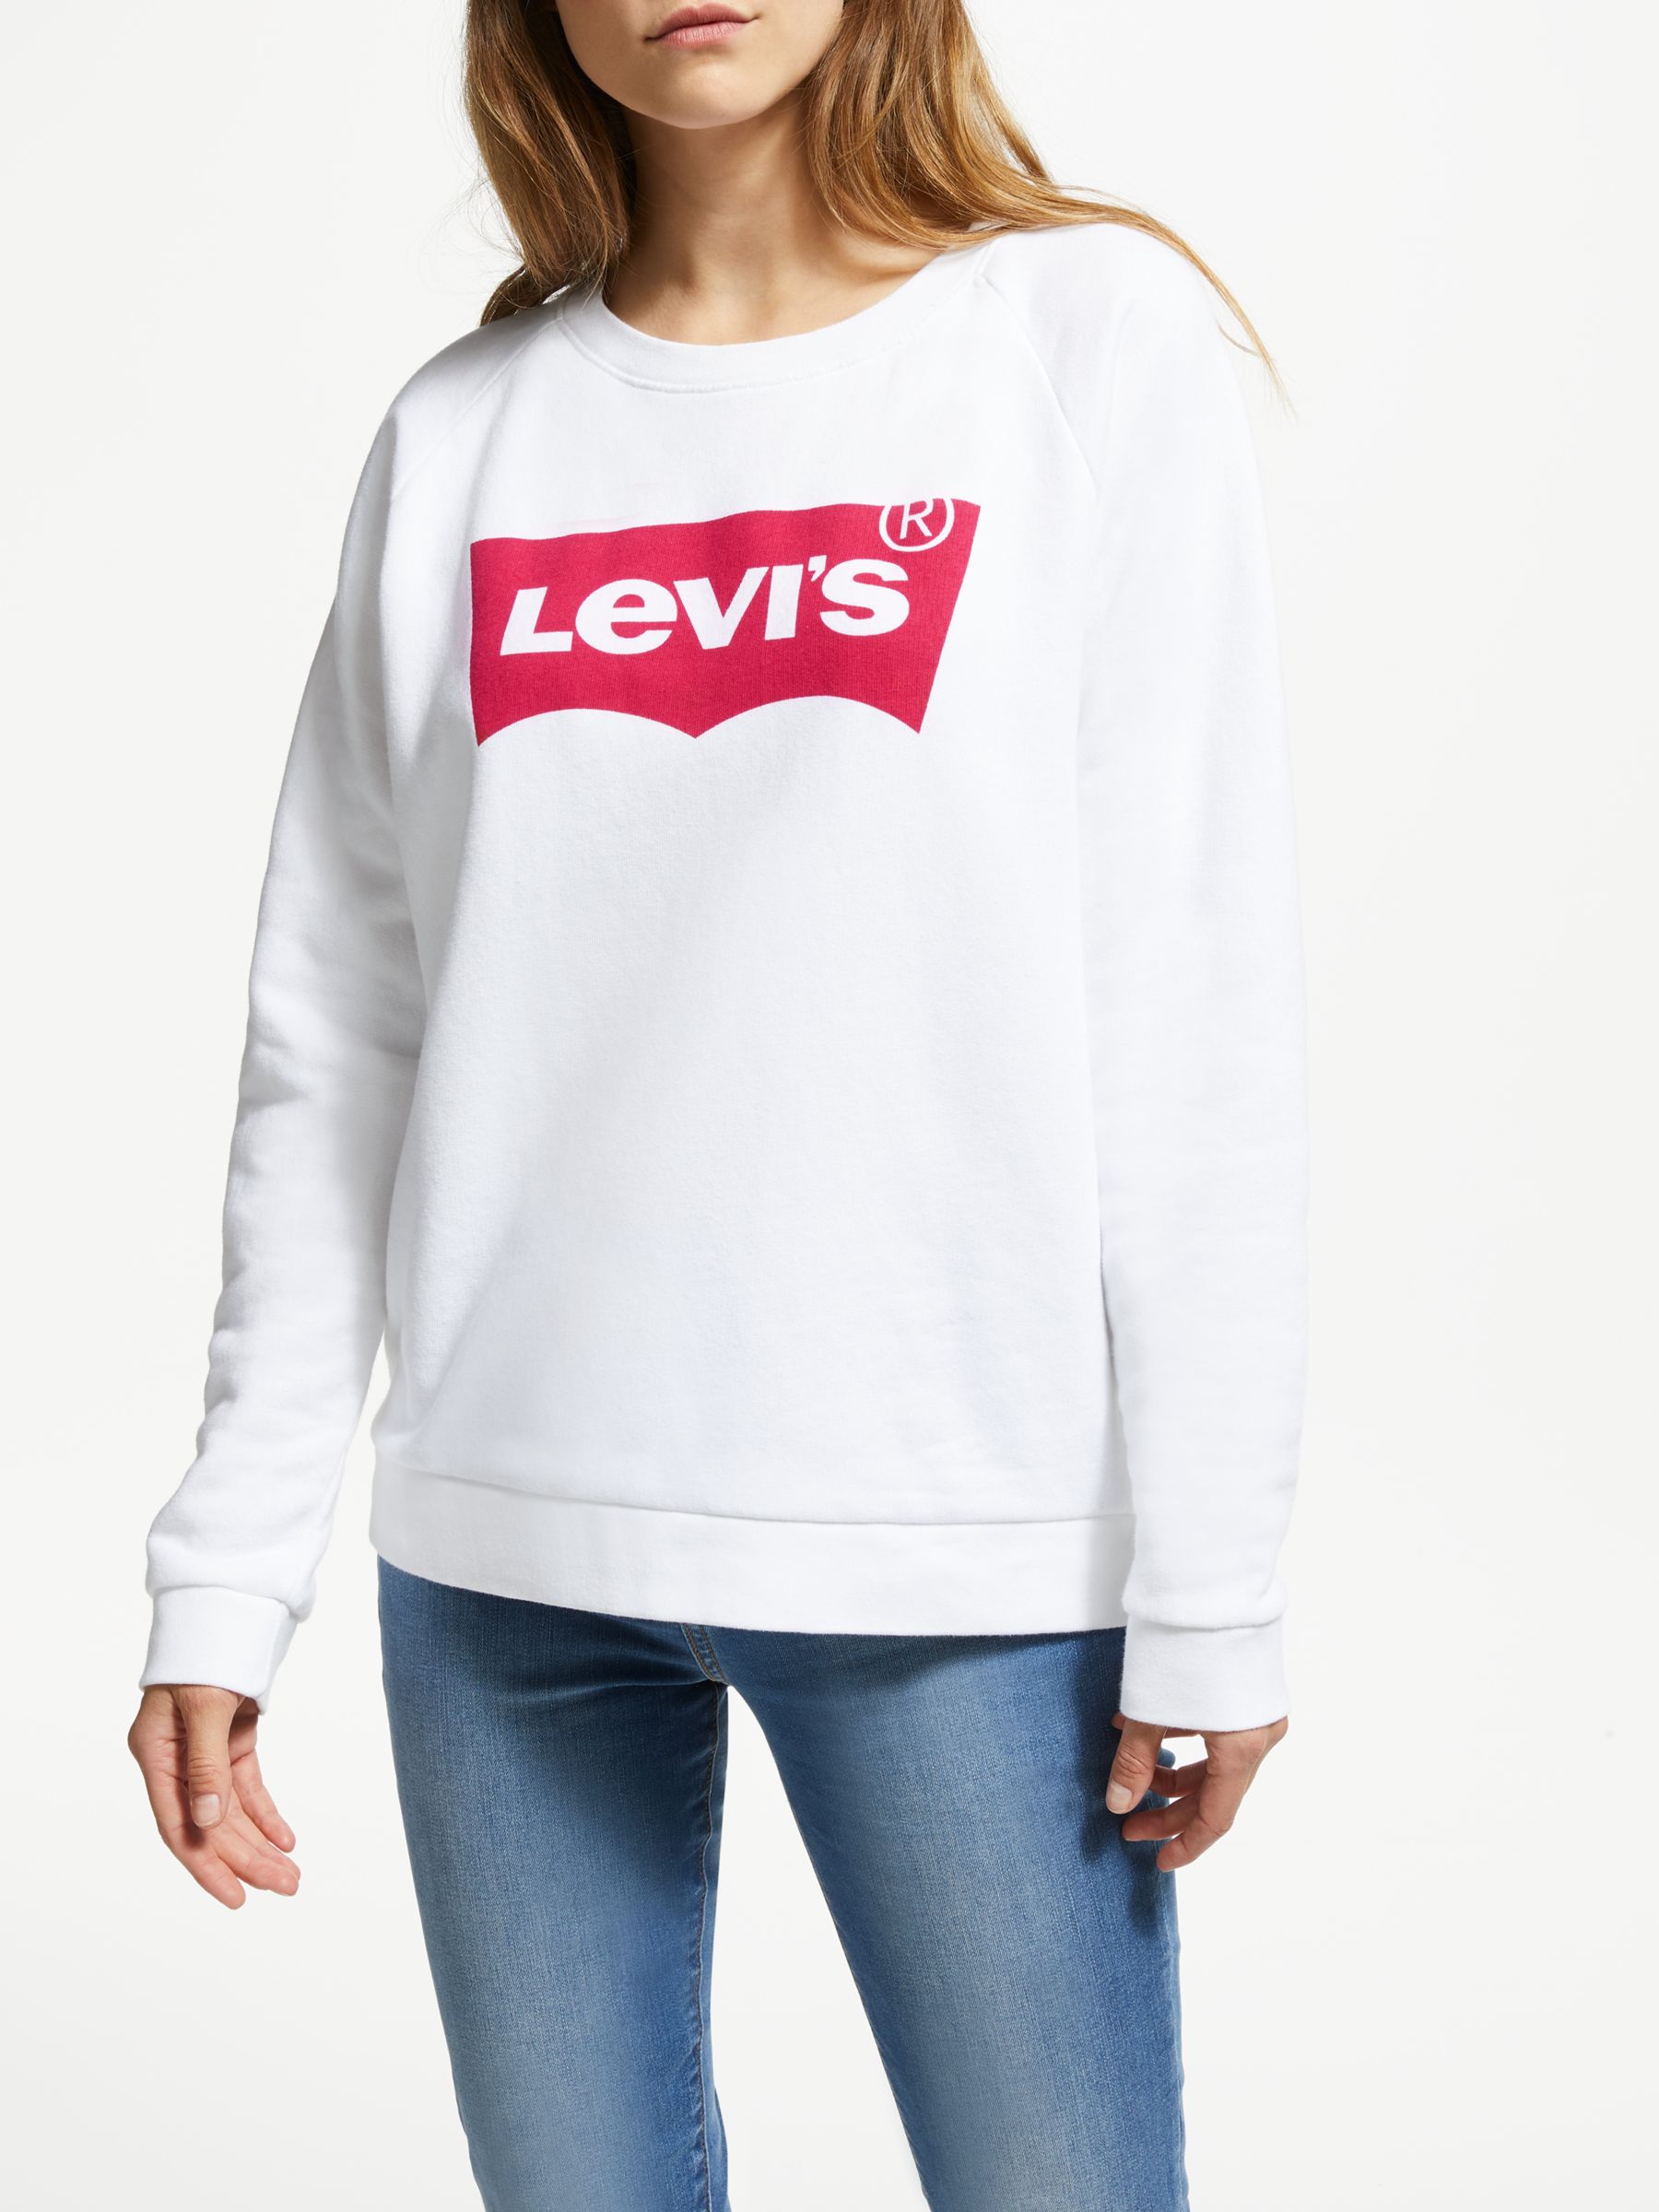 levi white hoodie women's